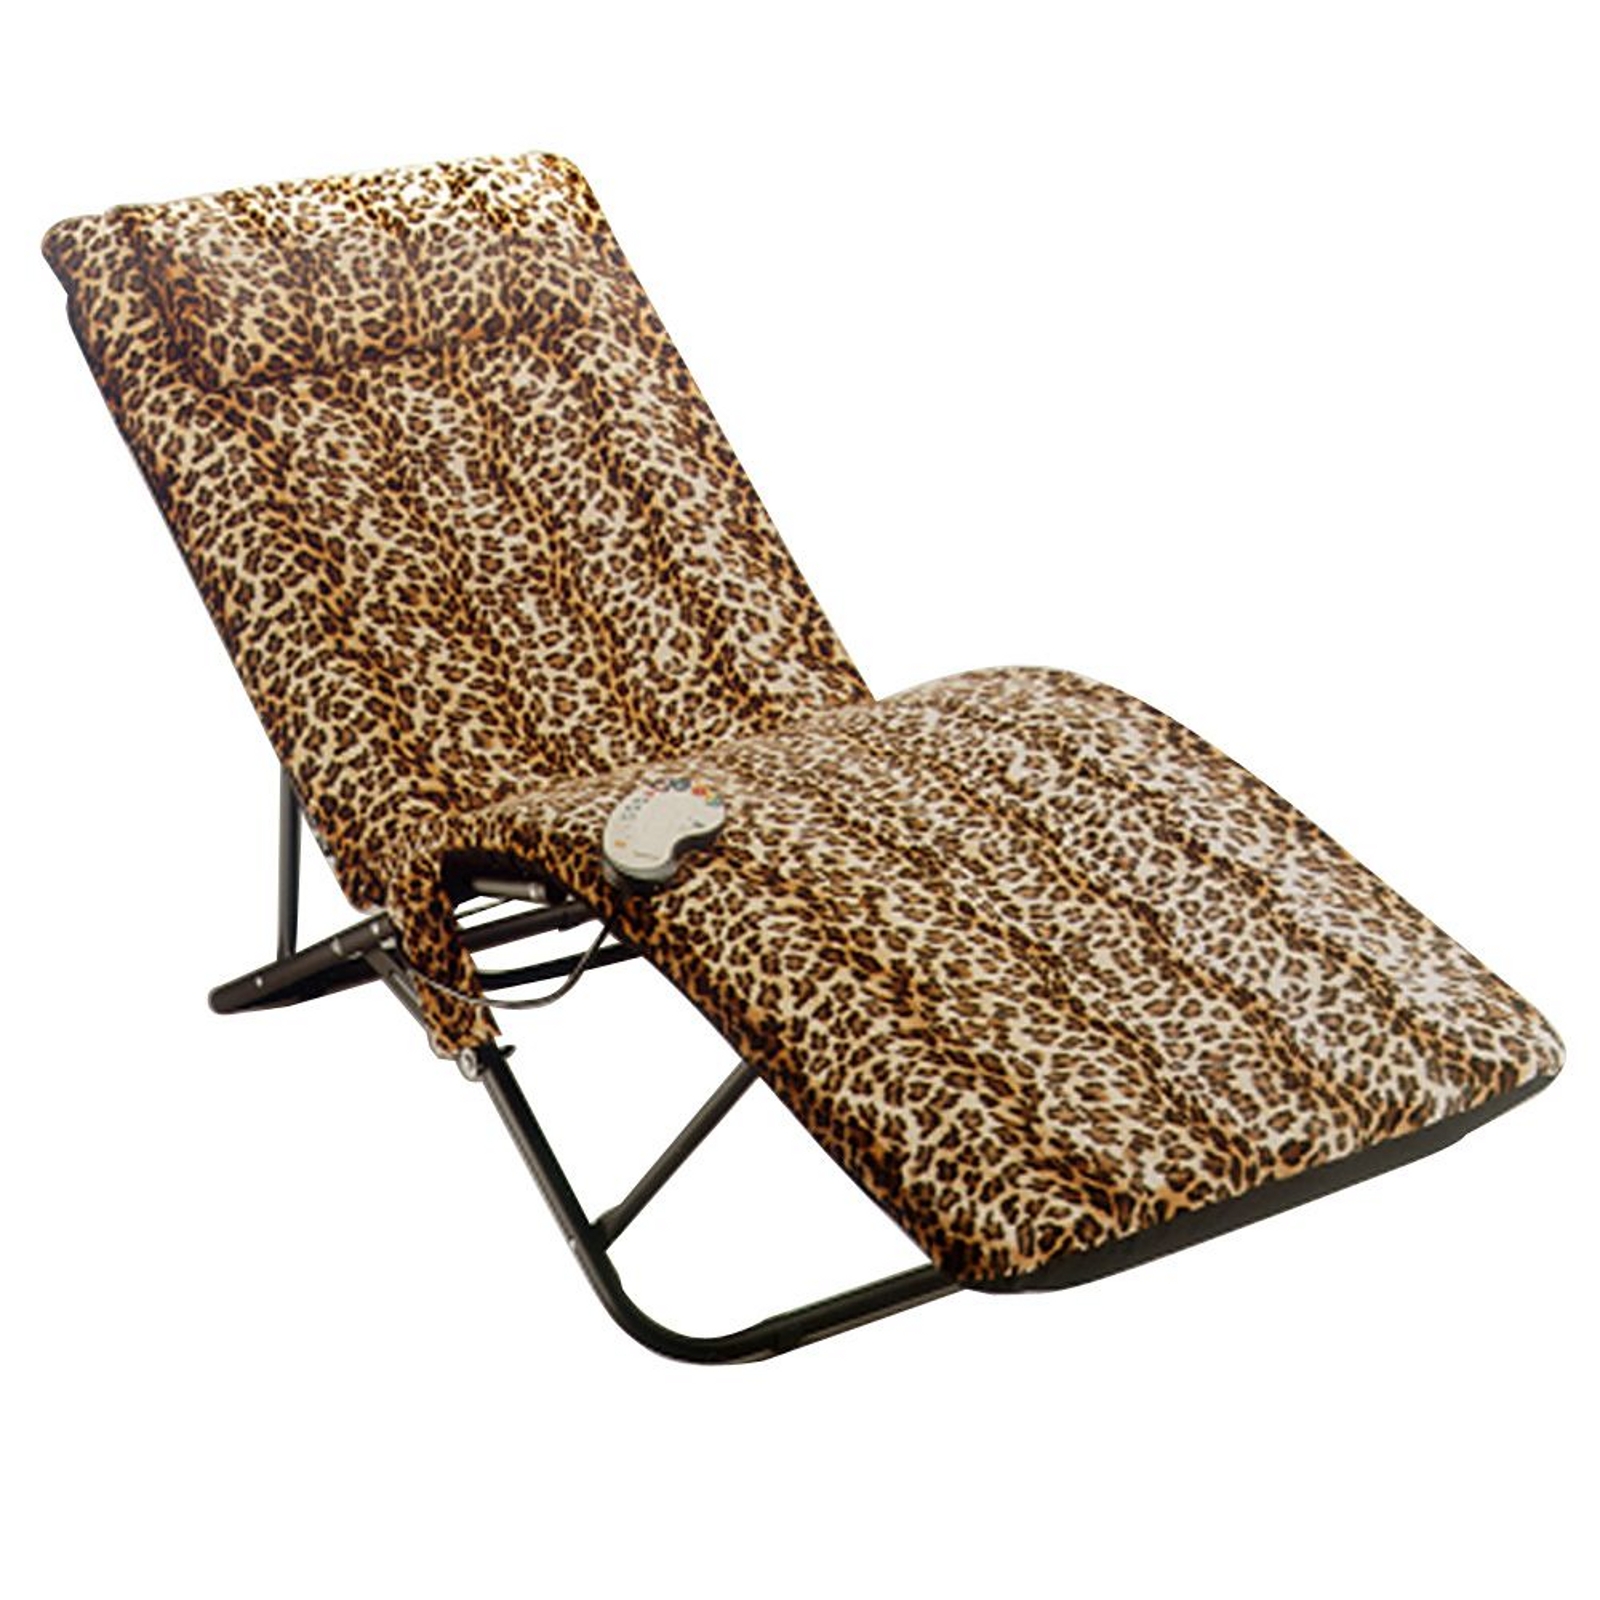 leopard beach chair